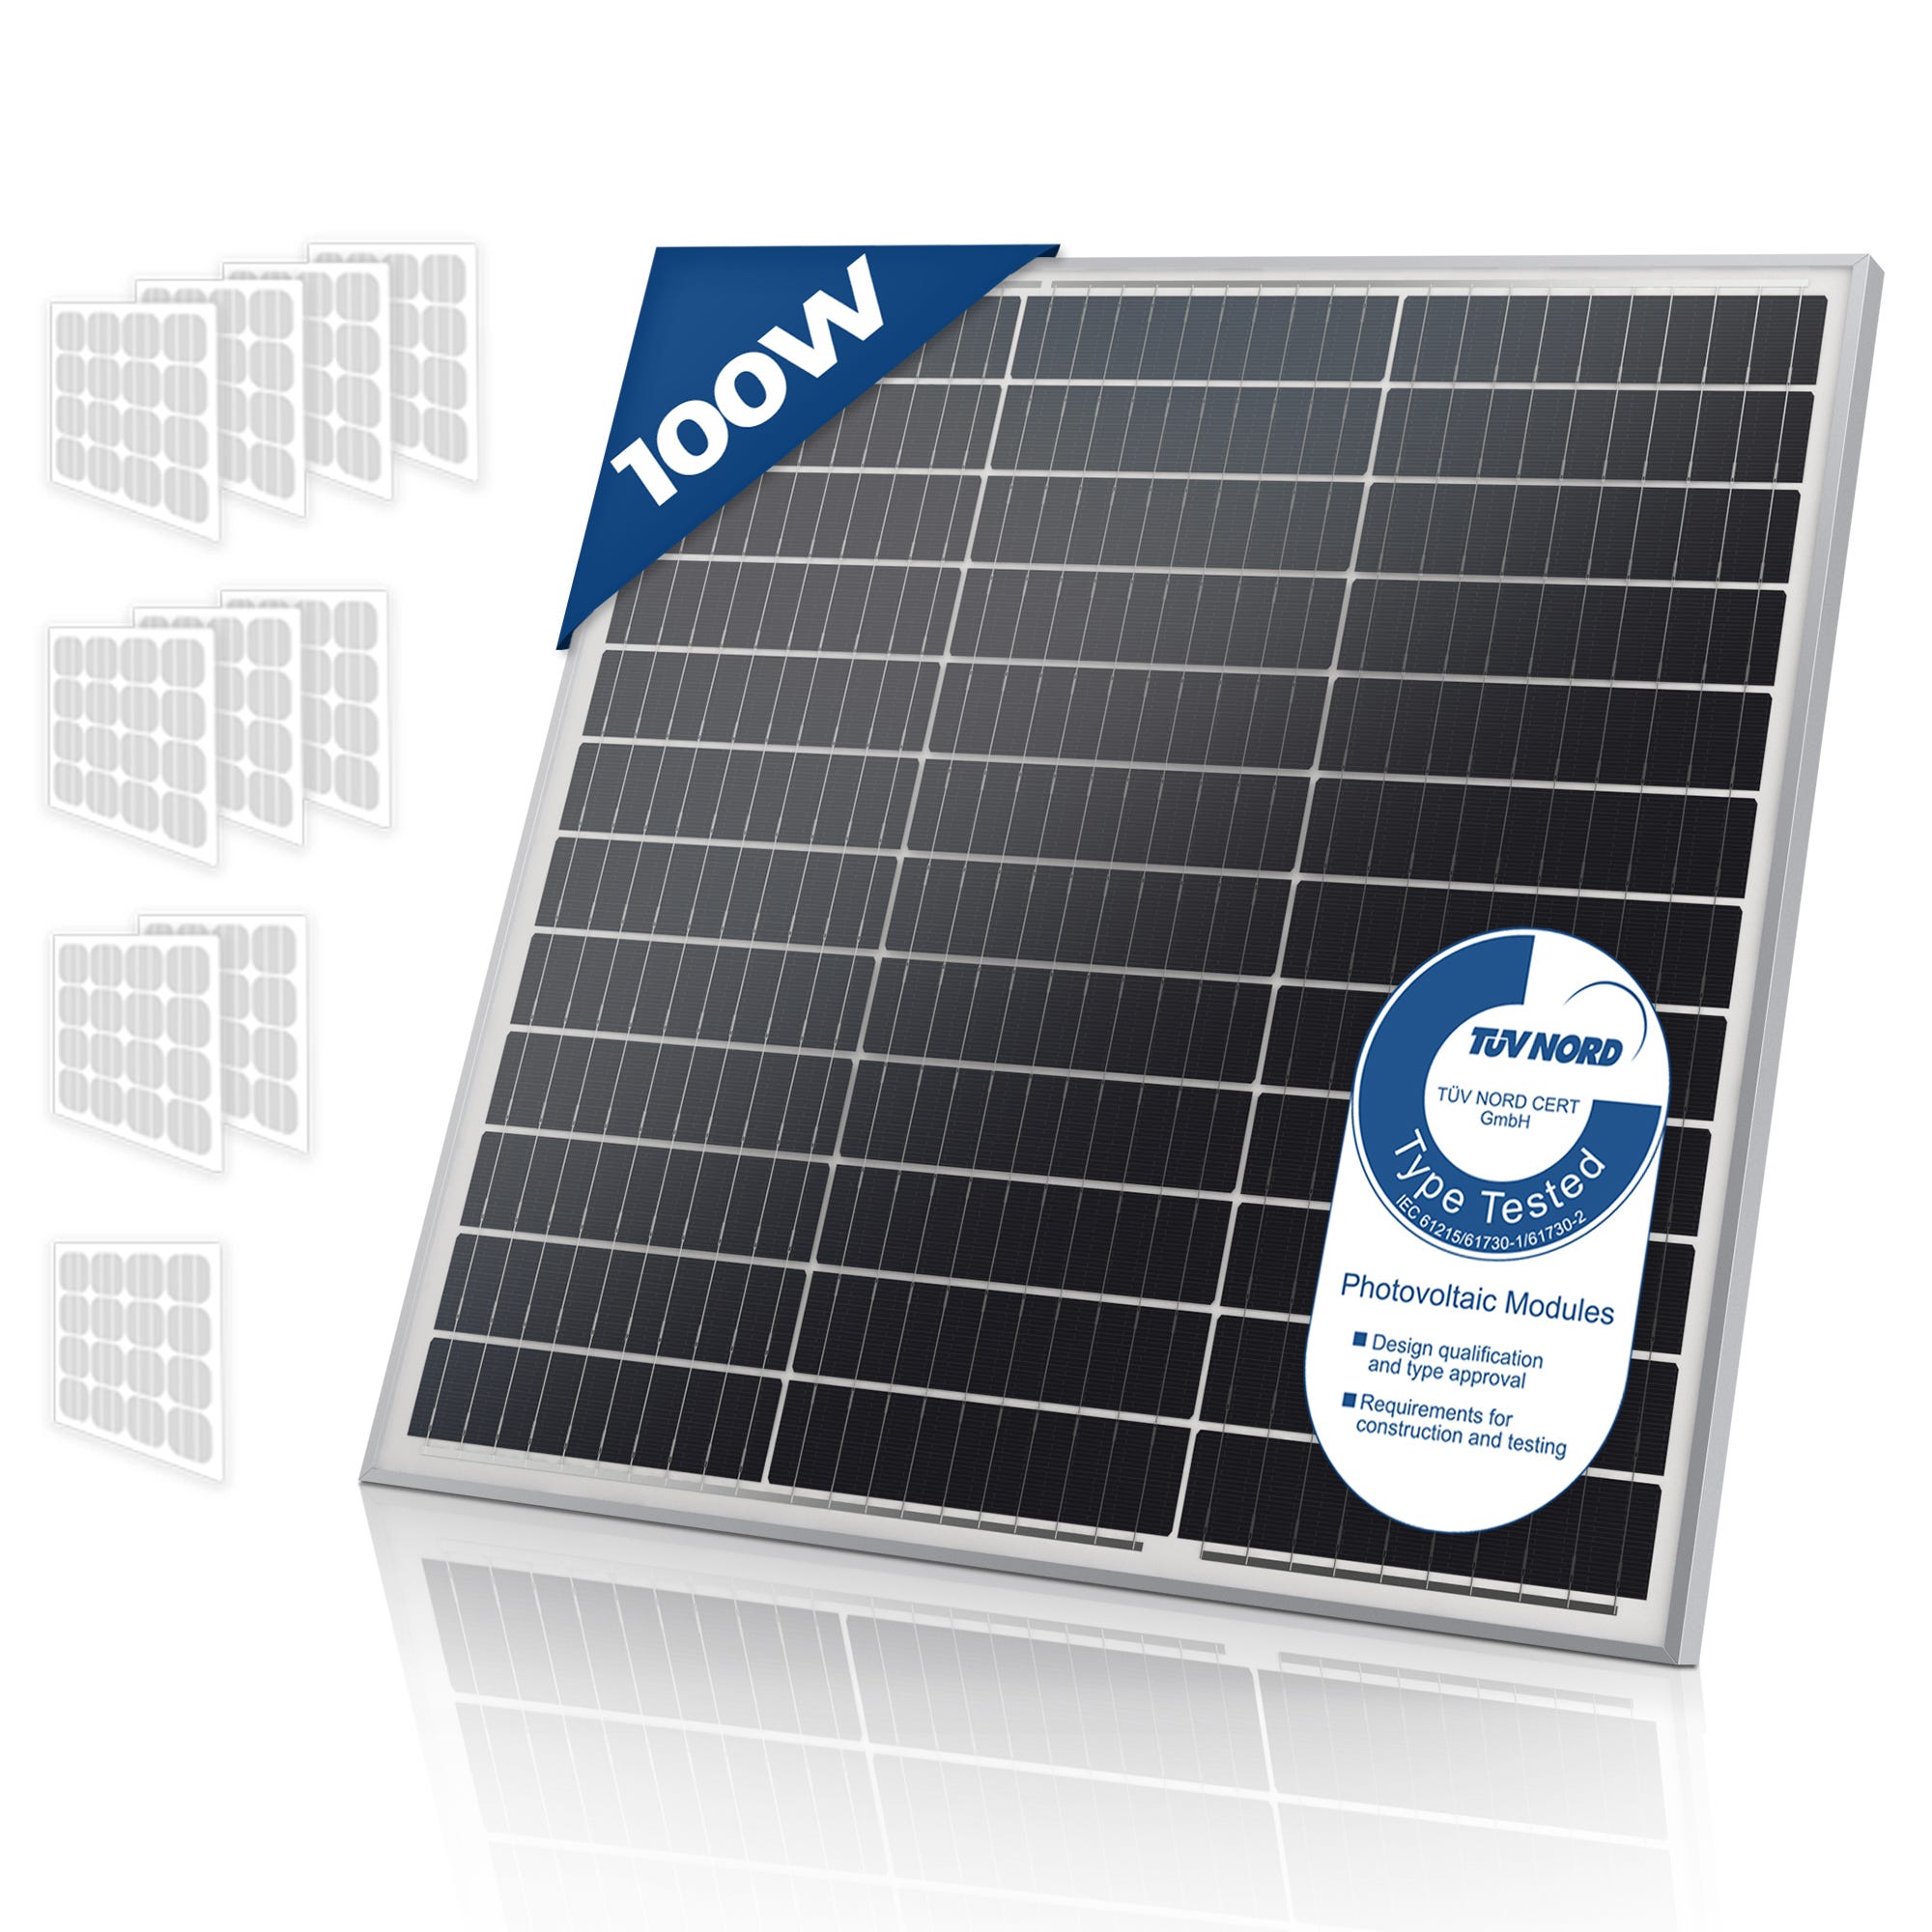 Solare Monocristallino - Fotovoltaico, Silicio, 100 W, per Batterie da 12V  - Modulo Solare per Giardino, Tetto, Caricabatteria p